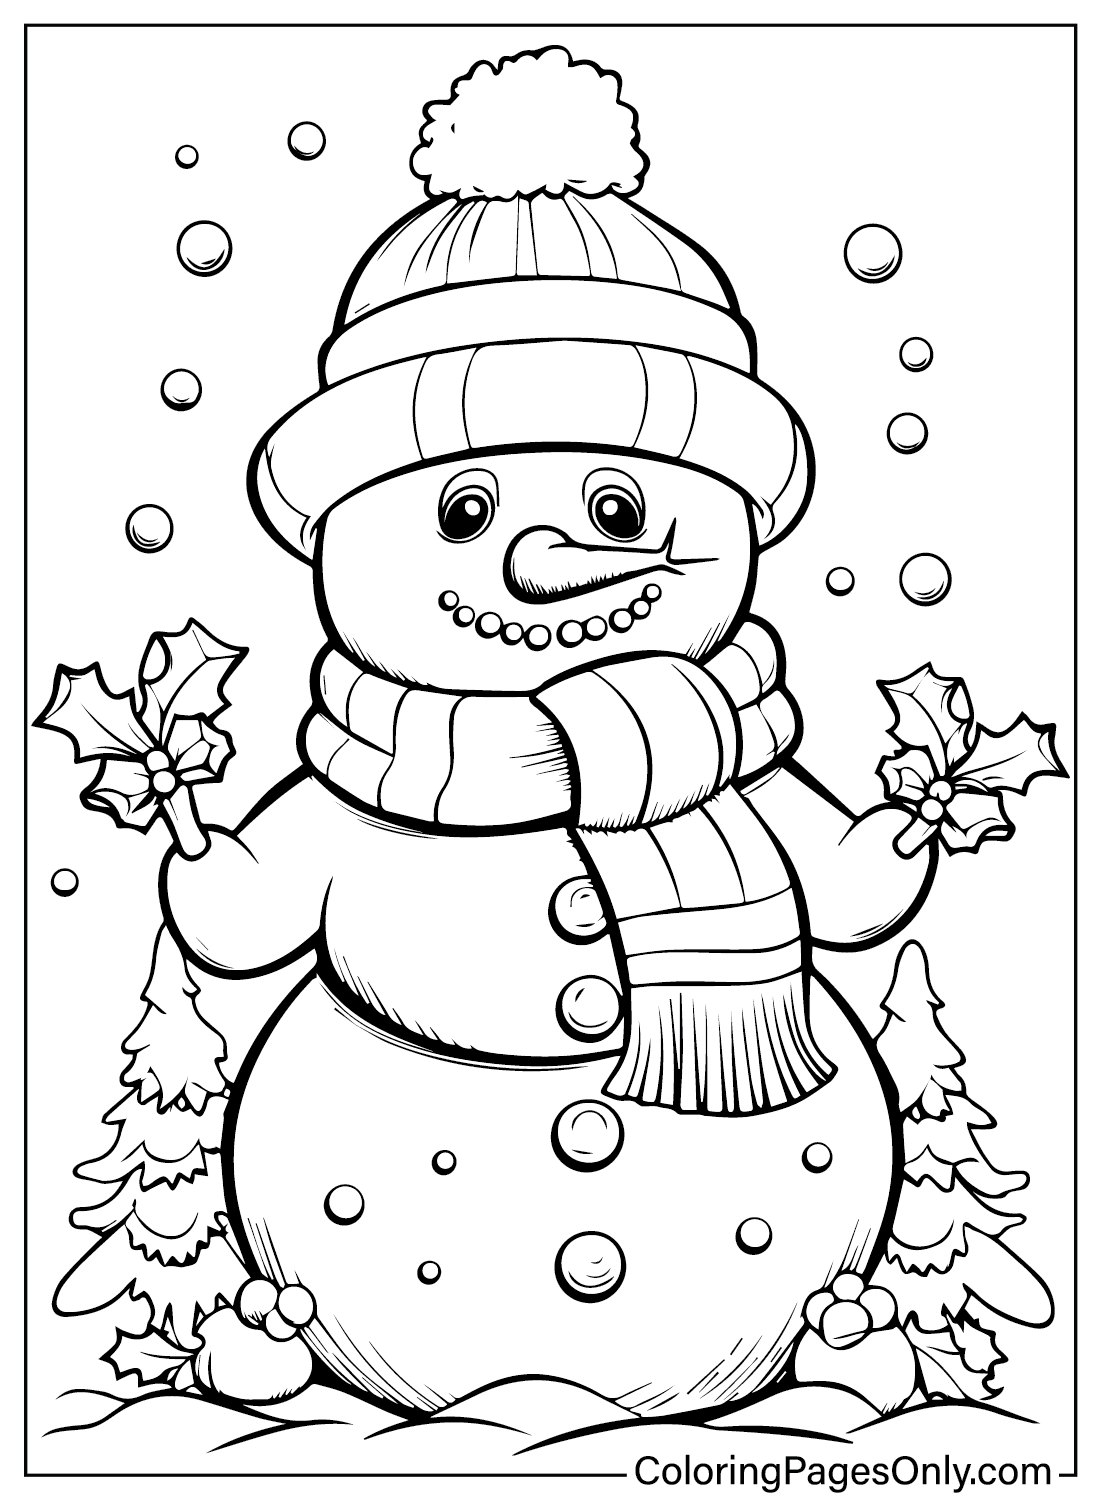 Página para colorir grátis de boneco de neve de dezembro